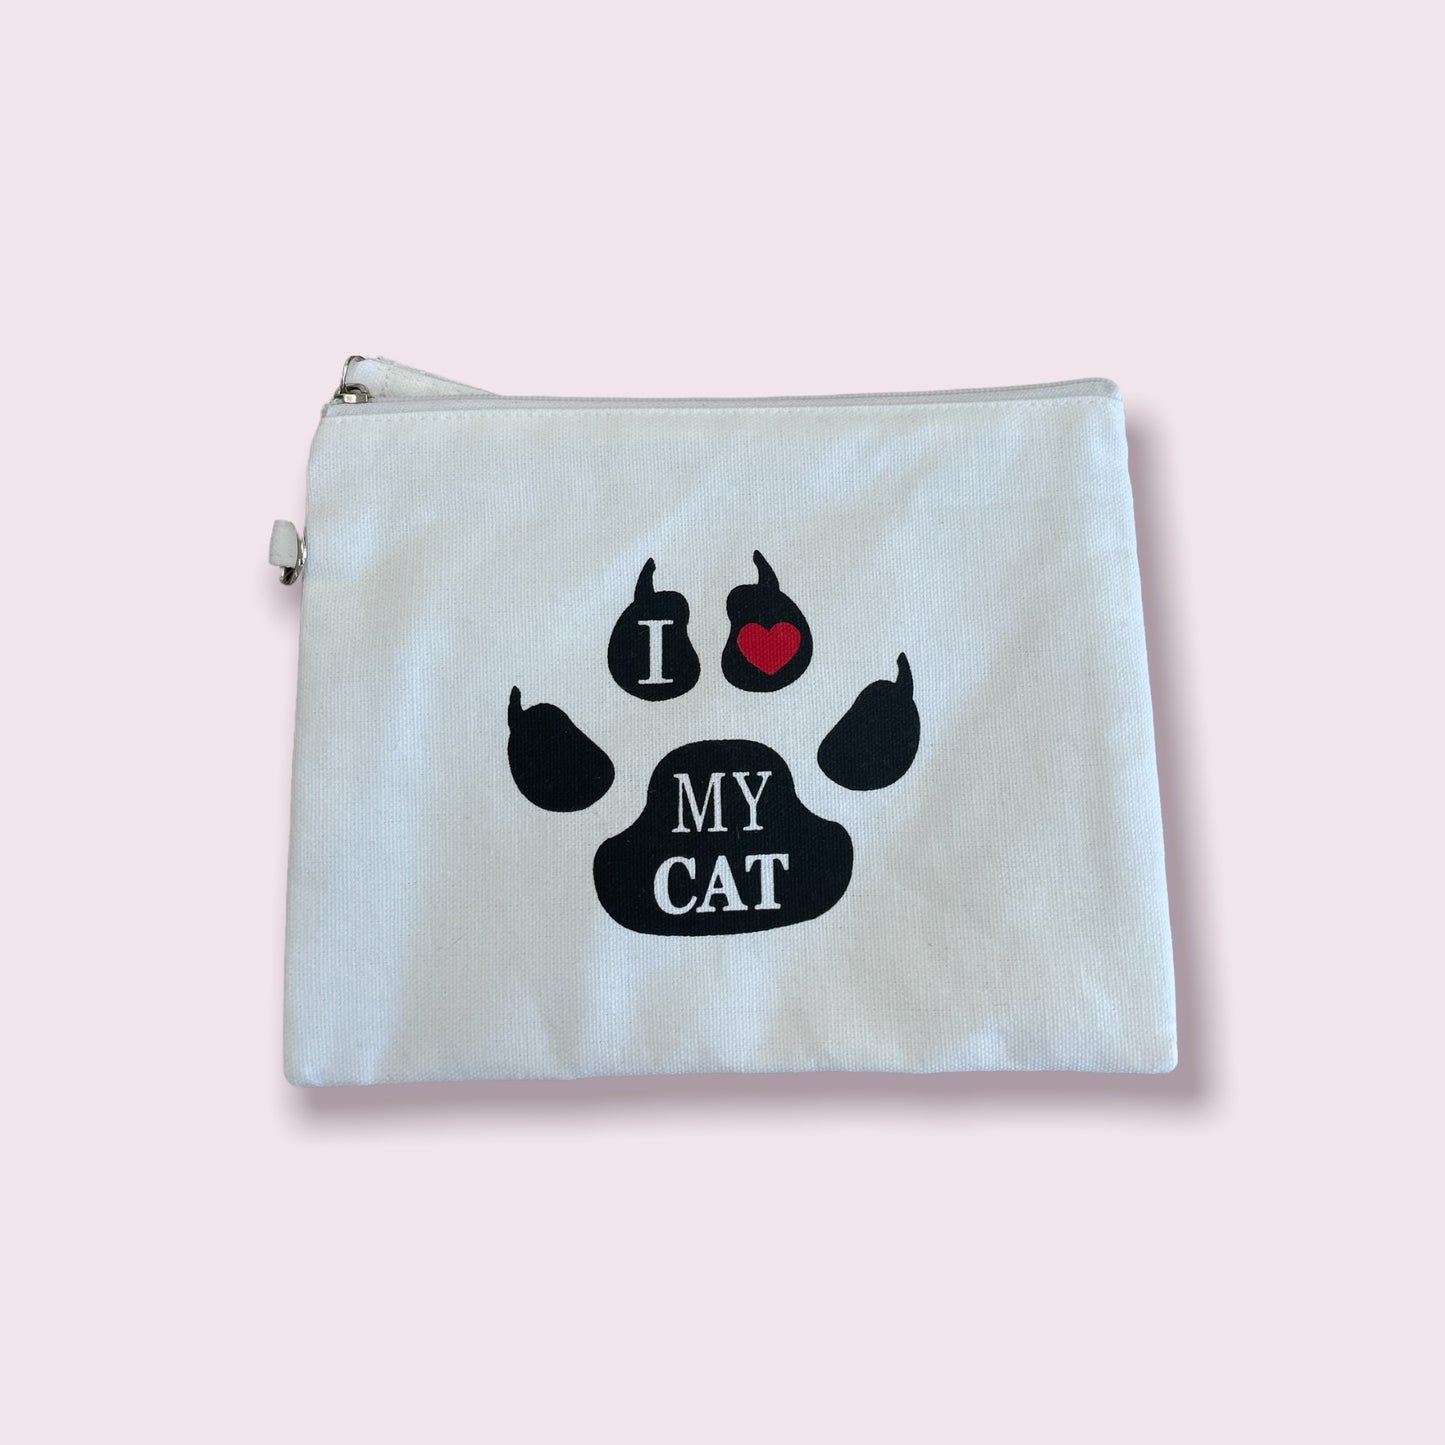 Cosmetic cat bag